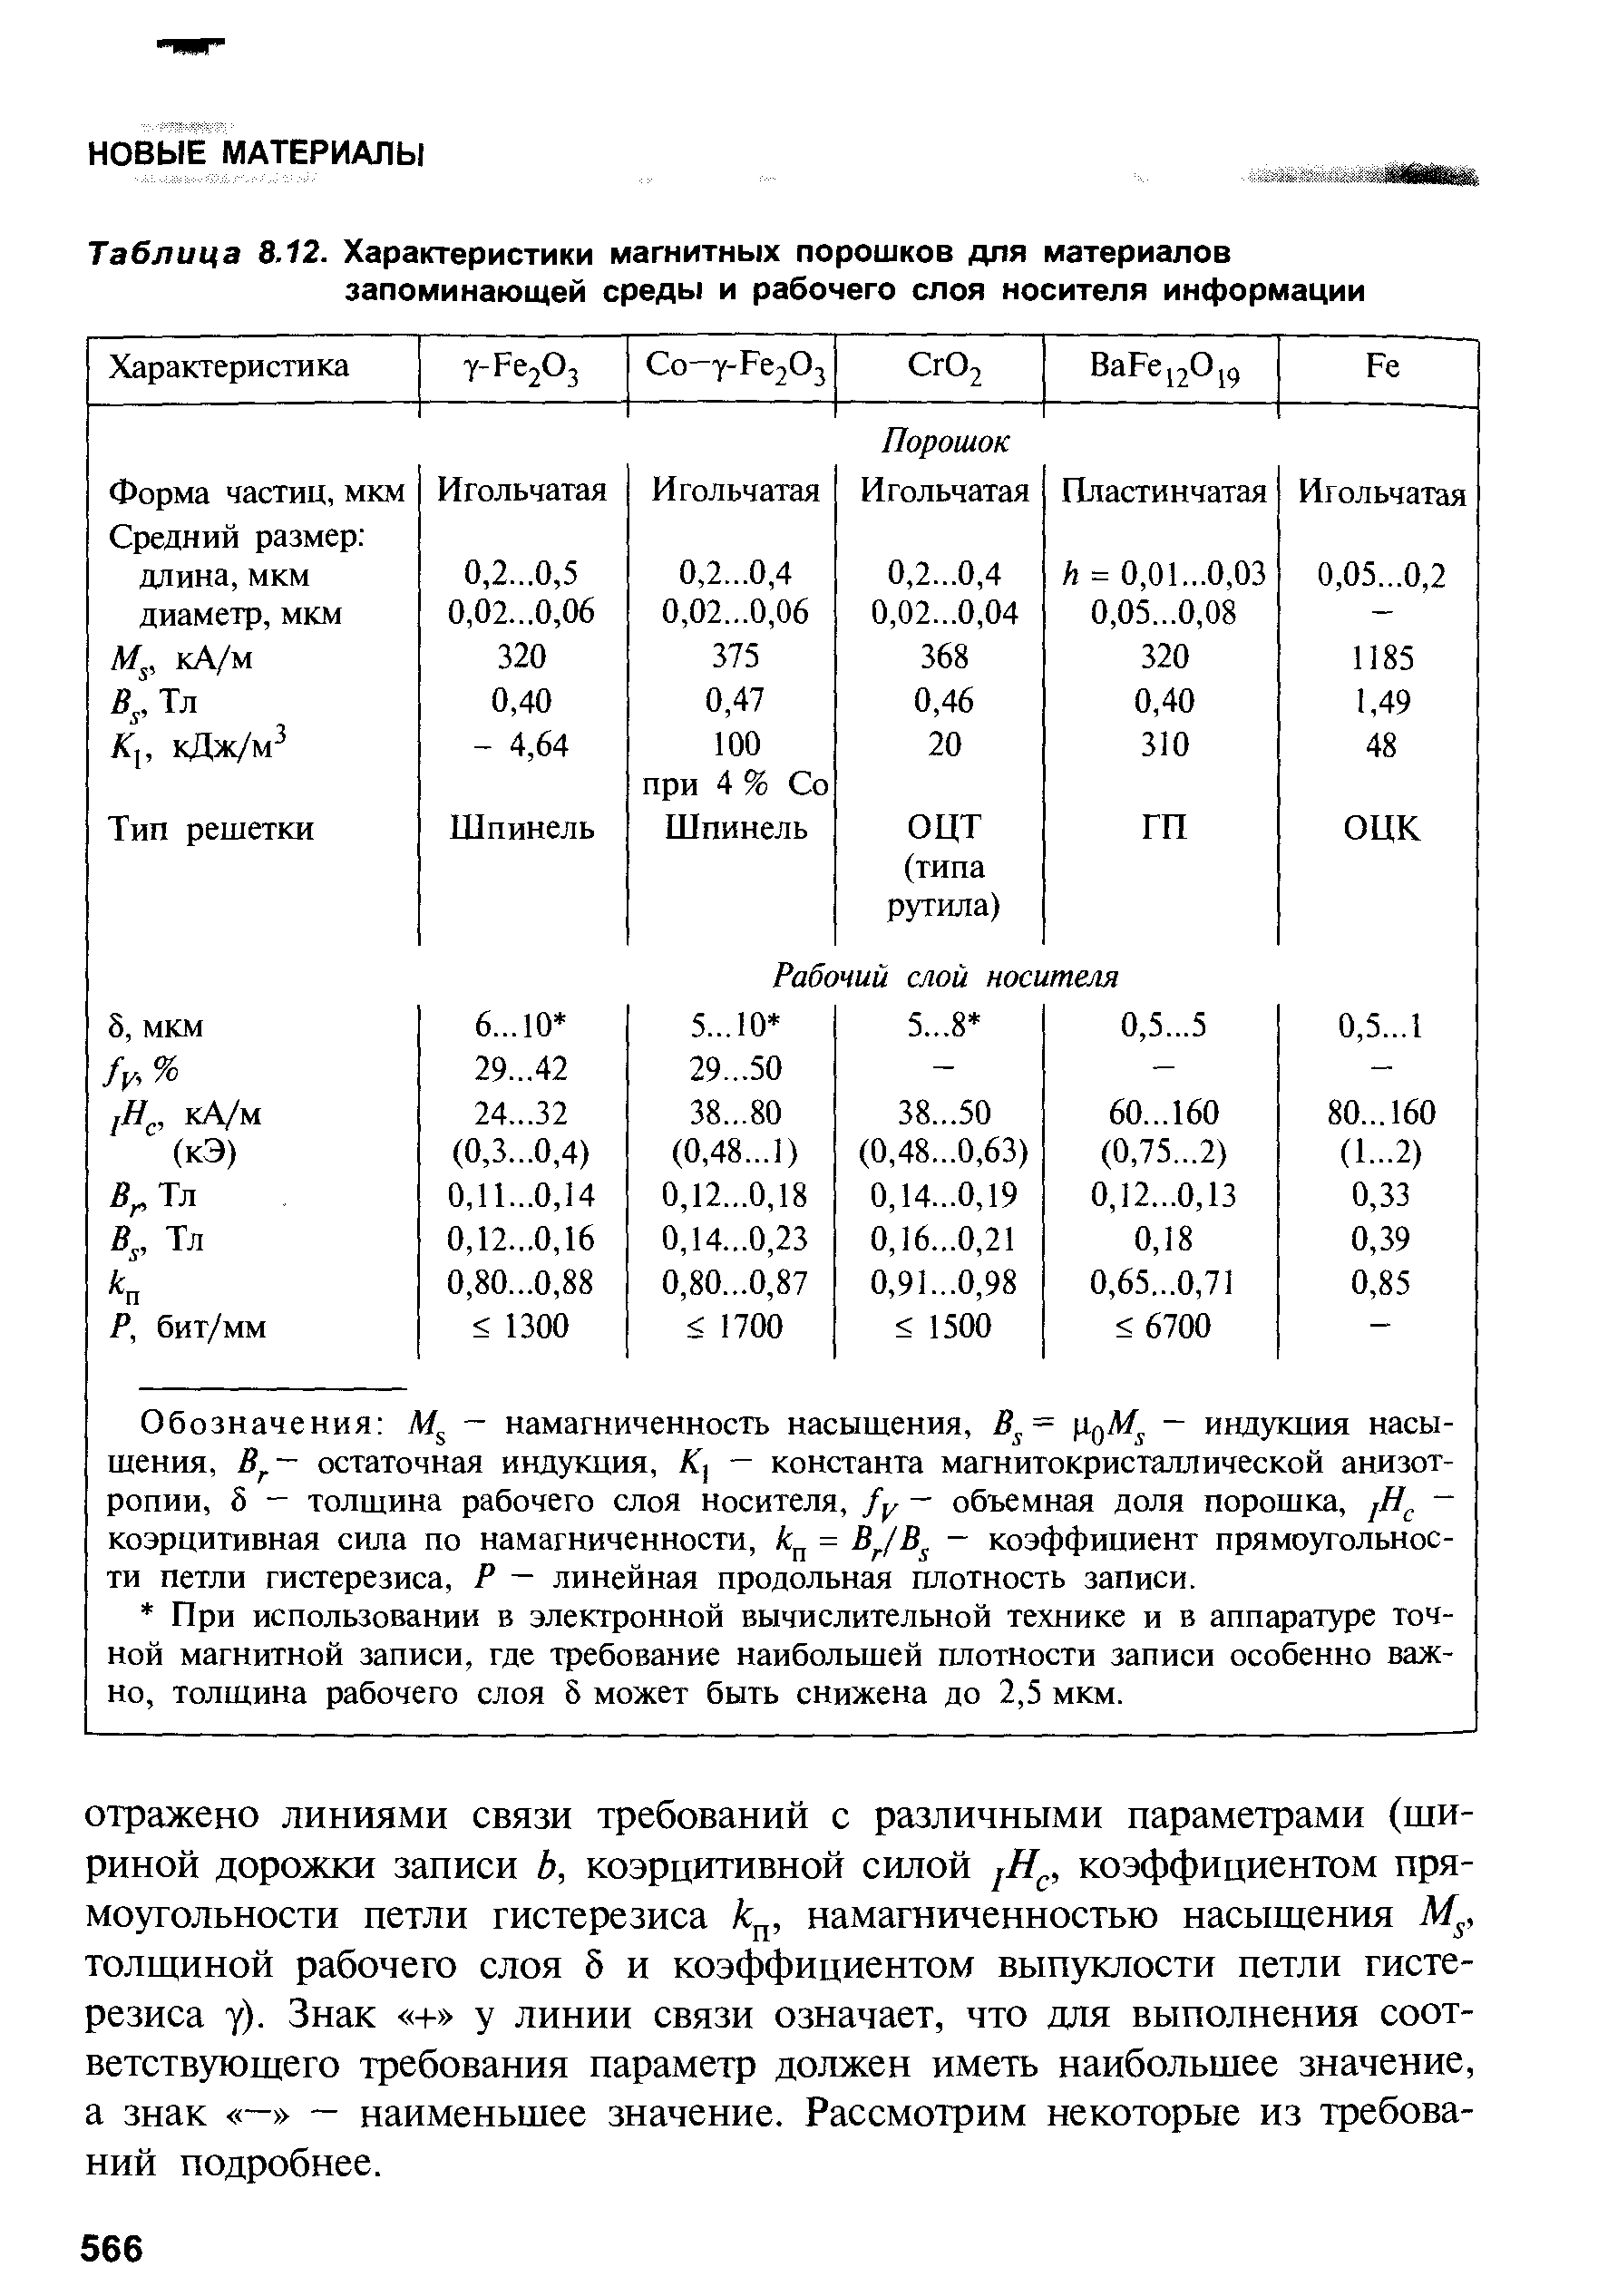 Таблица 8.12. Характеристики магнитных порошков для материалов